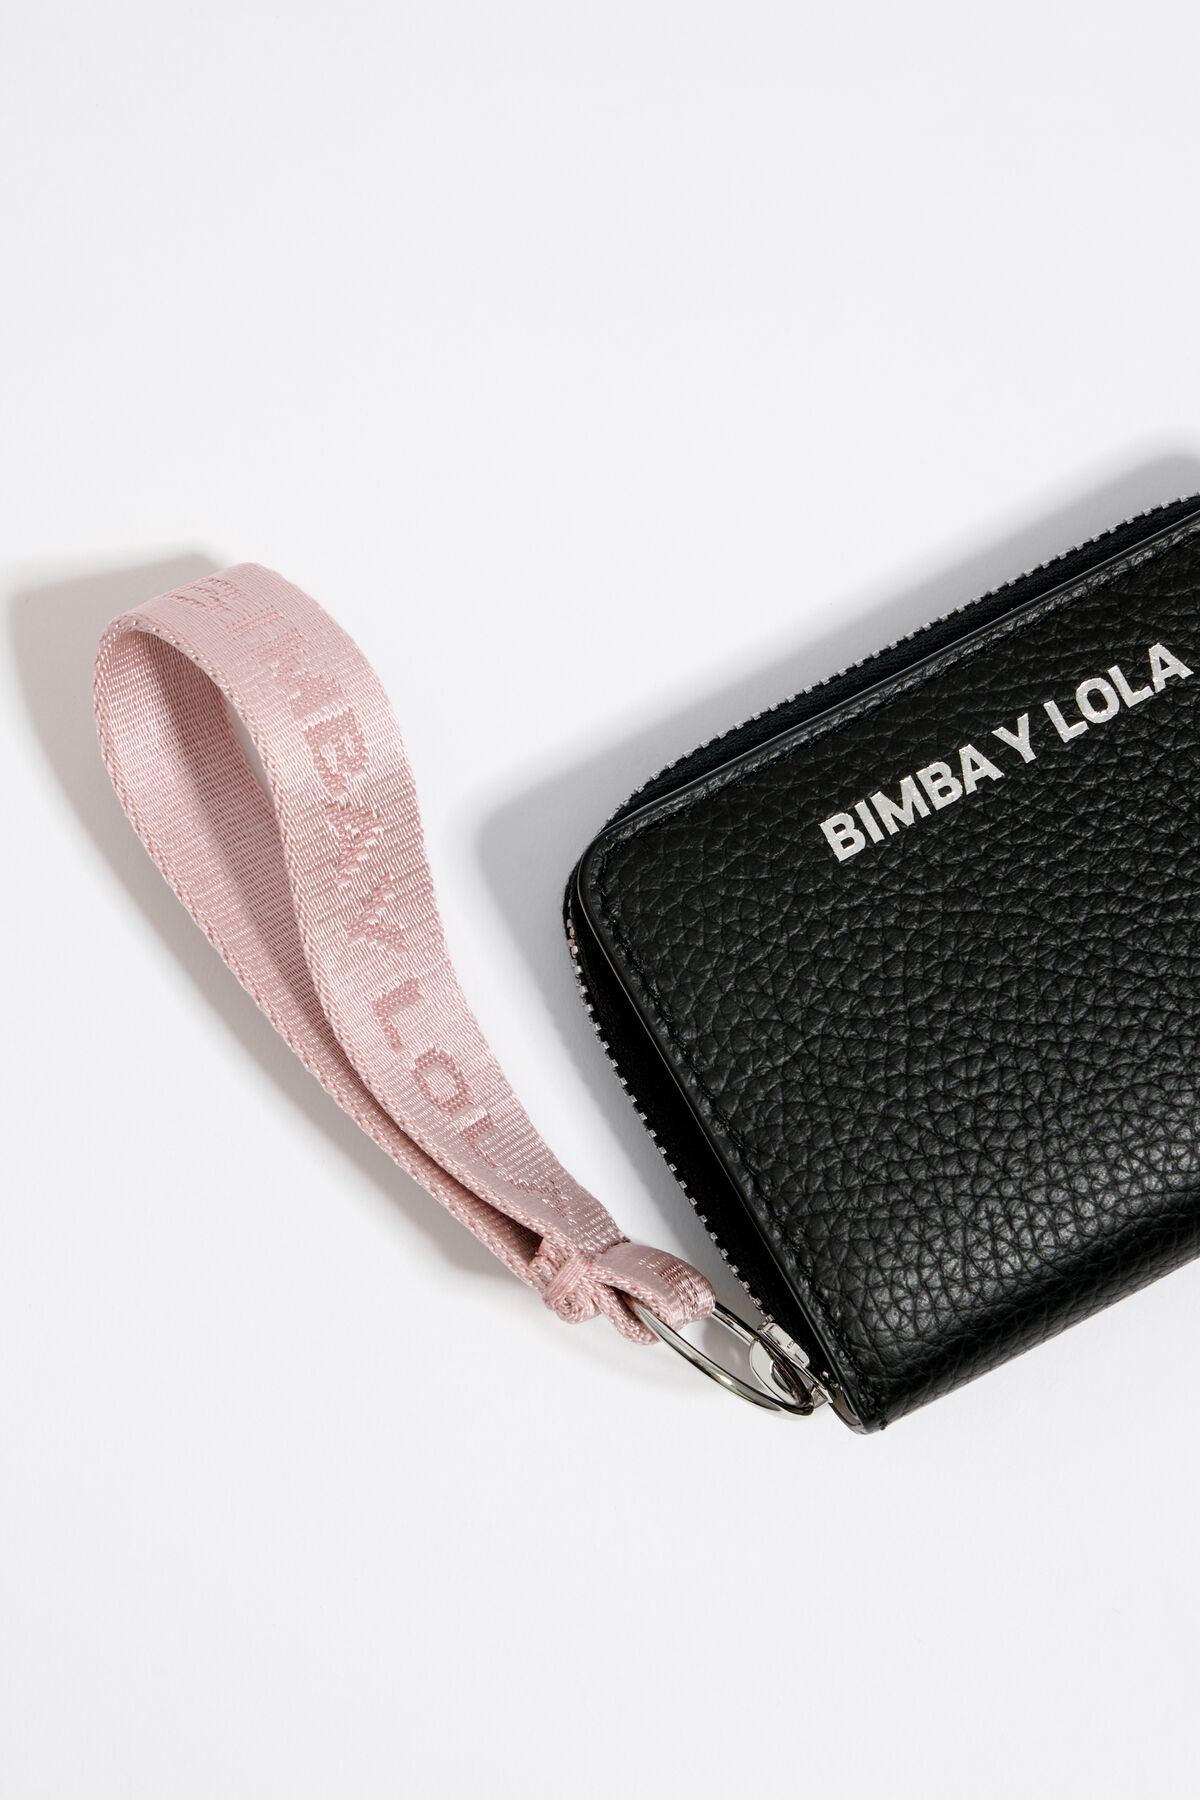 Billetera y monedero - Bimba y Lola